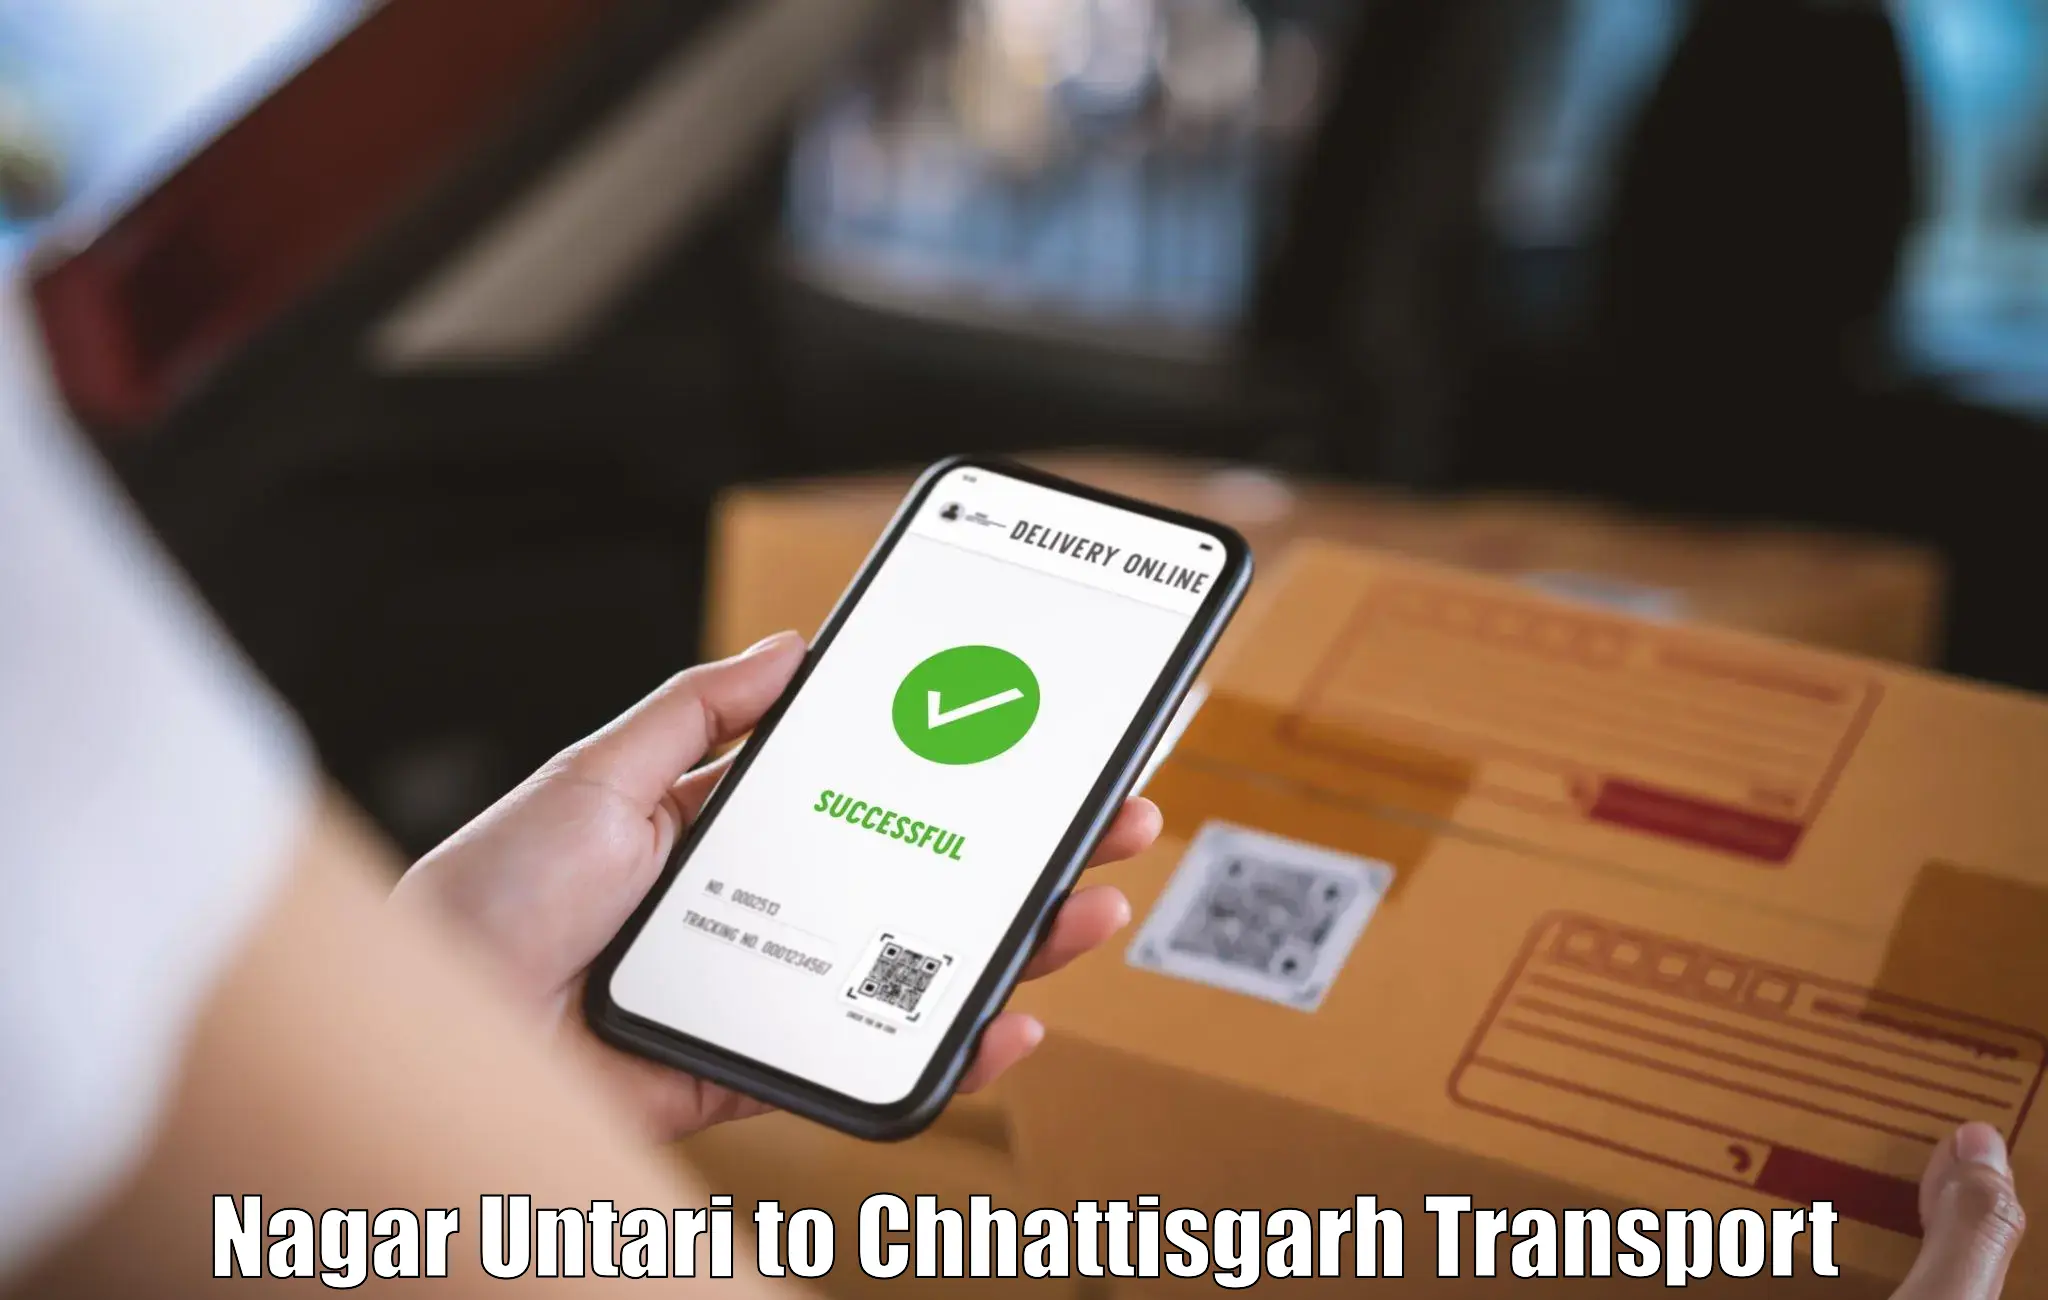 Shipping services Nagar Untari to Pathalgaon